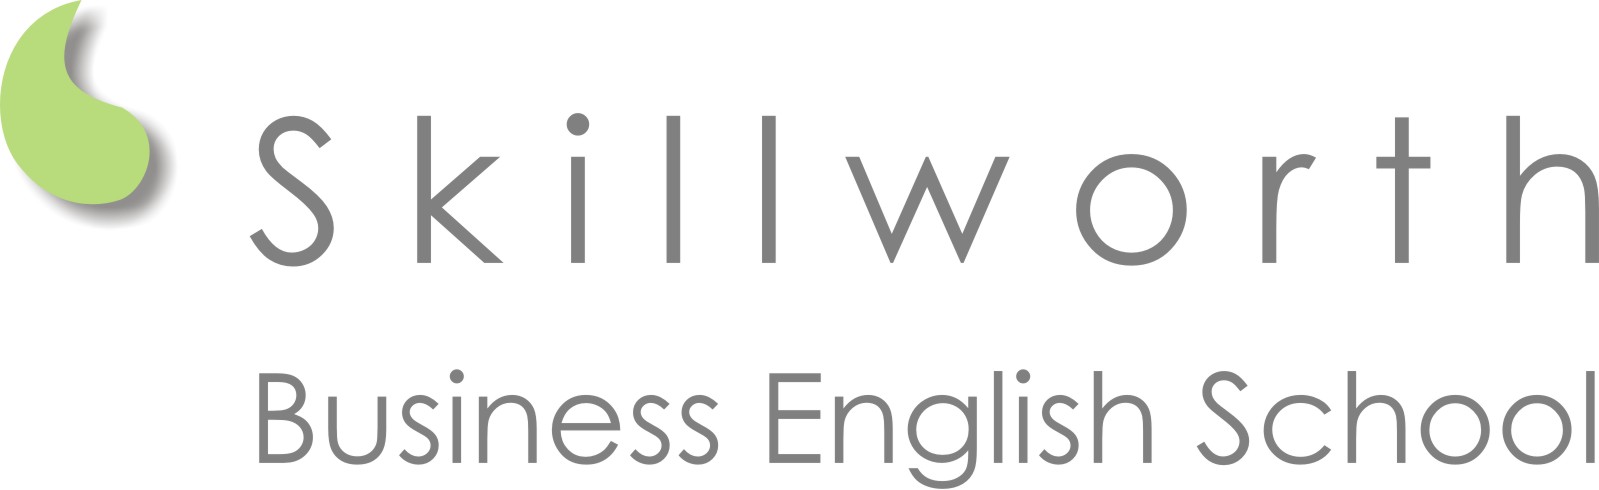 Skillworth Business English School